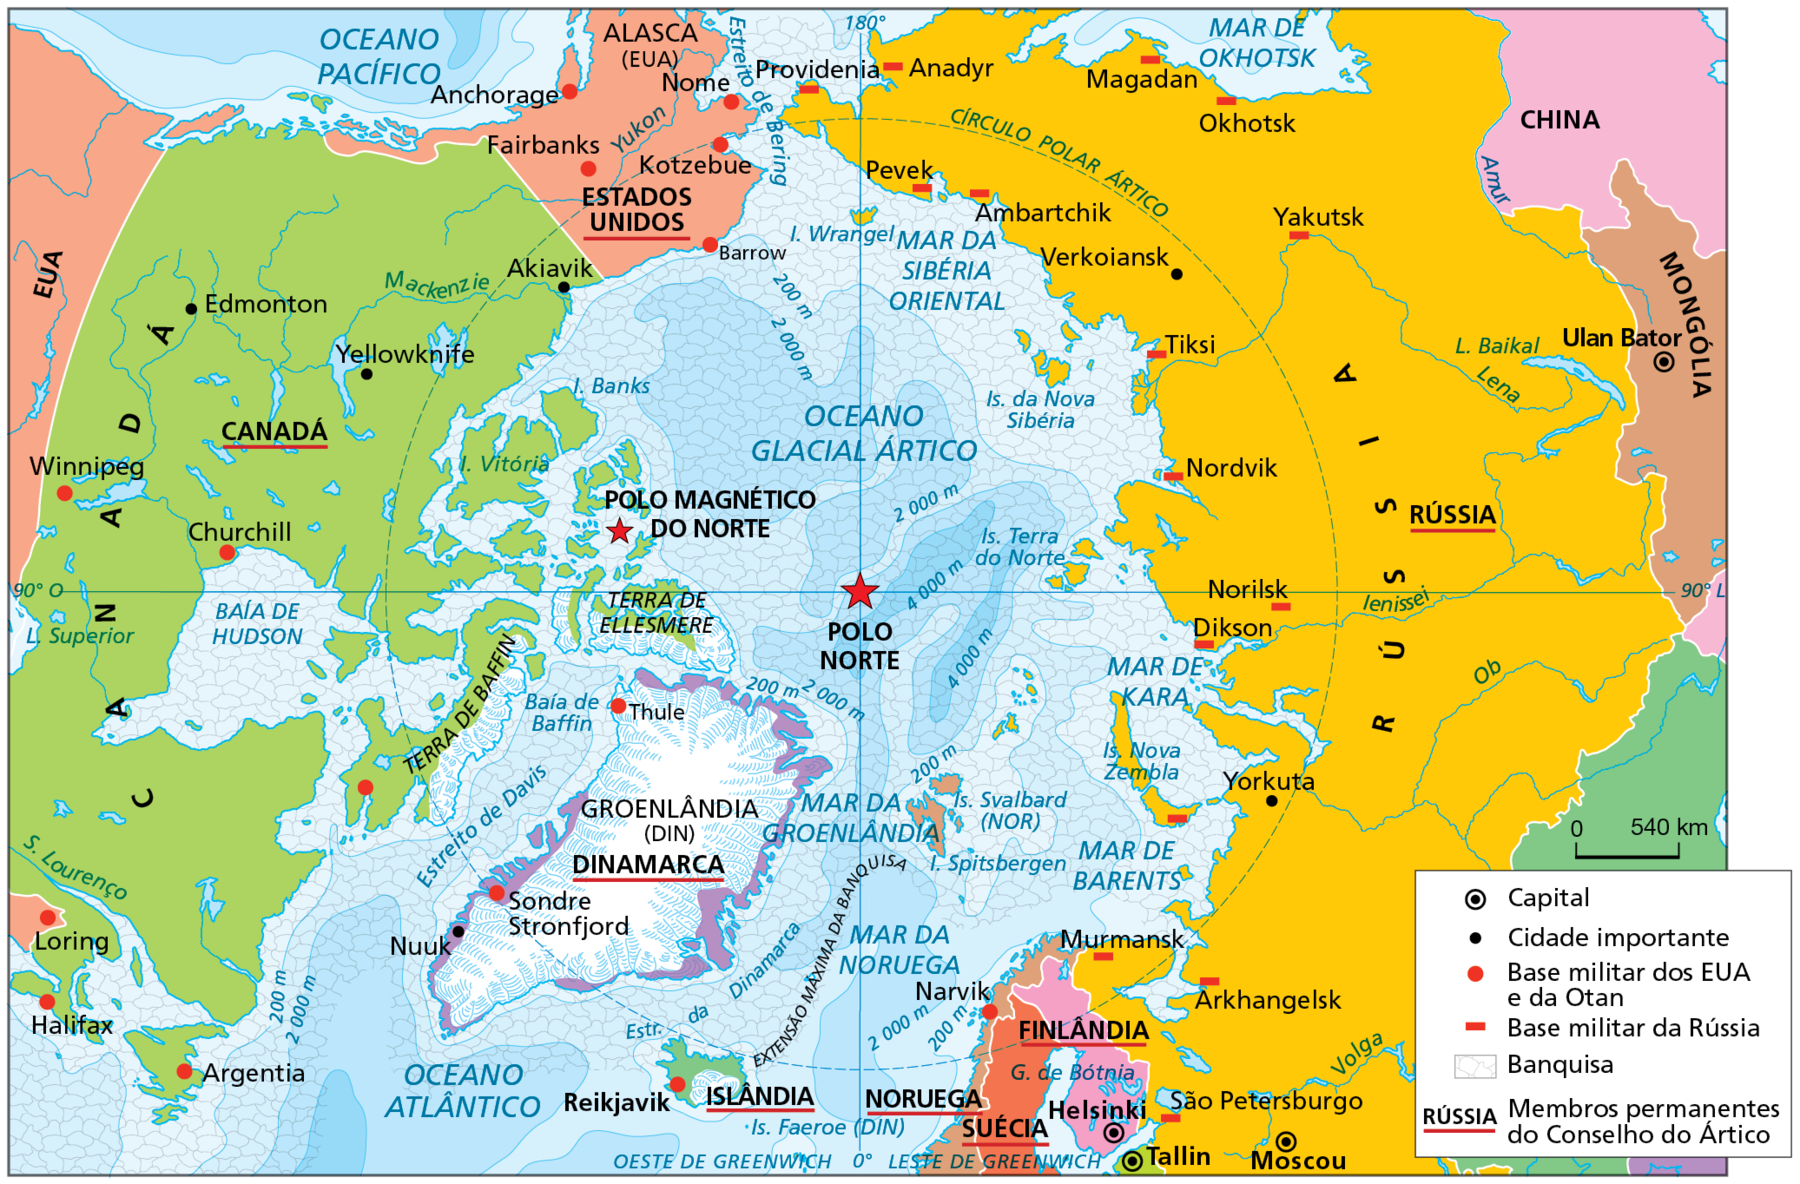 Mapa. Ártico: geopolítica e recursos - 2019. Mapa mostrando as divisões territoriais do Ártico, áreas de exploração, reservas comprovadas de petróleo e gás, cidades importantes, limites de zonas econômicas, banquisa e inlândsis. O mapa destaca a região do Ártico vista de cima. Do lado direito do mapa, a Rússia: mais ao sul, a Noruega, a Suécia, a Finlândia e a Islândia mais ao sul do Ártico. Do lado esquerdo, a Groenlândia (Dinamarca), terras do Canadá e Alasca (Estados Unidos). Inlândsis estão representadas por áreas com pequenos riscos azuis nas bordas da Groenlândia, da Terra de Baffin (Canadá) e da Terra de Ellesmere (nas proximidades do Polo Magnético Norte). Banquisas estão representadas por linhas curvas fechadas, na cor cinza, em toda área central da região ártica, sobrepondo-se à área do Oceano Glacial Ártico. Em linhas tracejadas vermelhas estão representados os Limites de Zonas Econômicas Exclusivas (ZEE) ao redor da Groenlândia, da Islândia, em torno de parte dos territórios de Rússia, Alasca e Canadá e na parte central da região ártica. Em linhas cinzas diagonais, o Território Autônomo Nunavut, no Canadá. Reservas comprovadas de petróleo e gás estão destacadas na cor cinza área central ártica; no Mar de Kara e Mar de Barents, nas proximidades da Rússia; em áreas na Baía de Baffin e Baía de Hudson, próximo ao Canadá; área da Terra de Ellesmere, próximo ao polo magnético do norte; áreas do Oceano Glacial Ártico próximo ao Alasca e Canadá. Com uma estrela vermelha, a indicação do Polo Norte (no centro do mapa) e Polo Magnético do Norte (a noroeste da estrela do Polo Norte). As áreas de exploração de petróleo são indicadas por um triângulo na cor preta na Rússia, Alasca, Canadá e Noruega. Um quadrado na cor preta indica áreas de exploração de gás na Rússia, Alasca, Canadá e Noruega.  Um trapézio na cor preta indica locais de extração de minérios na Rússia, Canadá e Groenlândia. Um ponto preto dentro de um círculo de fundo branco indicam a localização das capitais dos países: Suécia: Estocolmo; Noruega: Oslo;  Finlândia: Helsinki; Rússia: Moscou: Islândia:  Reykjavik. Pontos pretos simples indicam localização de cidades importantes. No Canadá: Churchill; na Rússia: São Petersburgo. no Alasca: Fairbanks, Barrow; na Groenlândia: Nuuque Godtas. Na parte inferior, à direita, a escala de 0 a 840 quilômetros. À esquerda, perfil topográfico da Groenlândia representando a variação altimétrica do relevo. No perfil, à esquerda, eixo vertical mostrando as altitudes em metros, variando de 0 a 6.000 metros. No eixo horizontal a extensão em quilômetros, variando de 0 a 1.600 quilômetros. Ponto A: entre 0 e 2.000 metros e 0 quilômetros. Ponto B: próximo a 2.000 metros e 1.200 quilômetros.